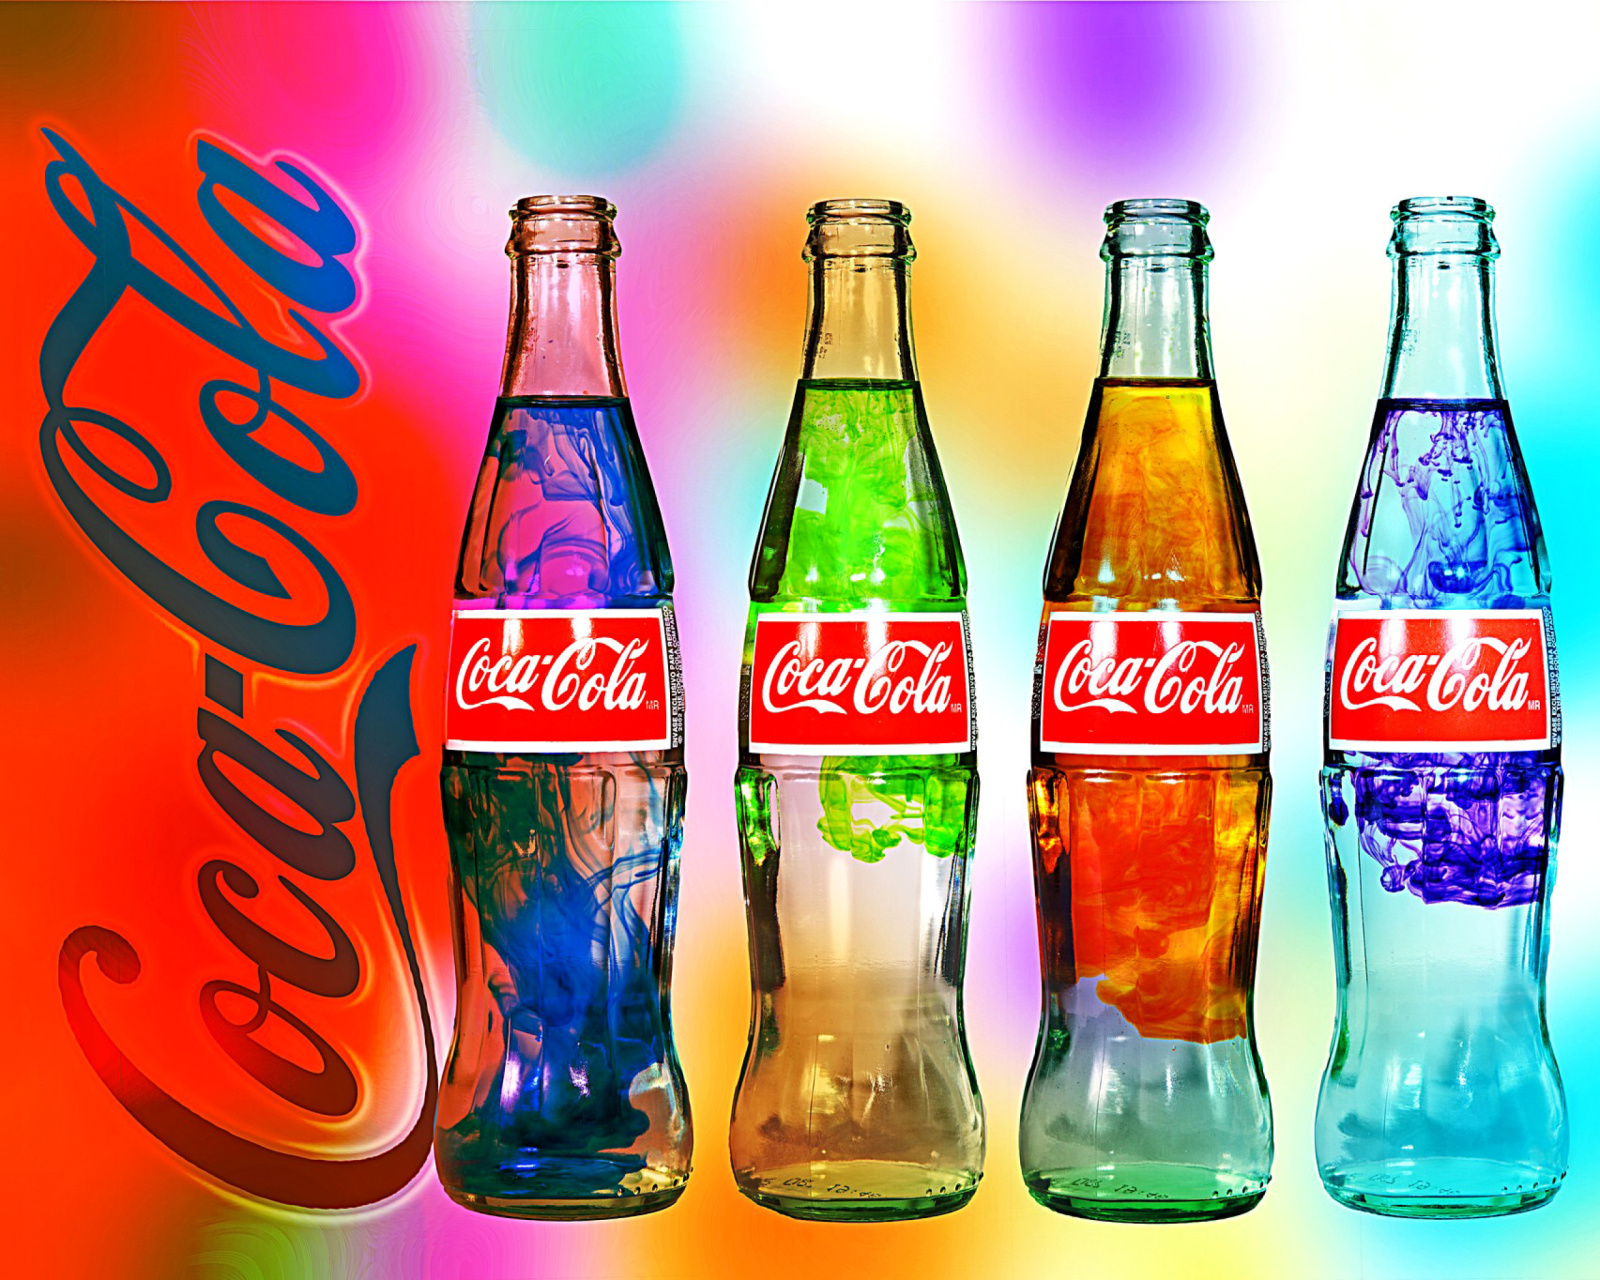 Das Coca Cola Bottles Wallpaper 1600x1280